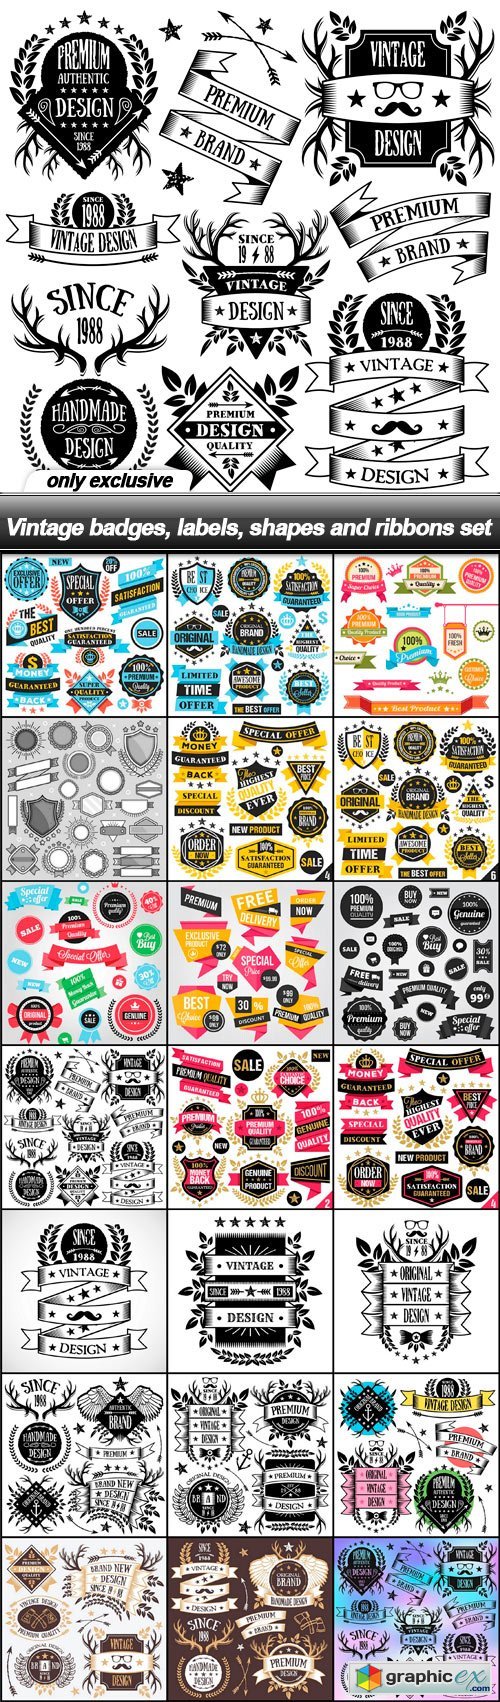 Vintage badges, labels, shapes and ribbons set - 21 EPS